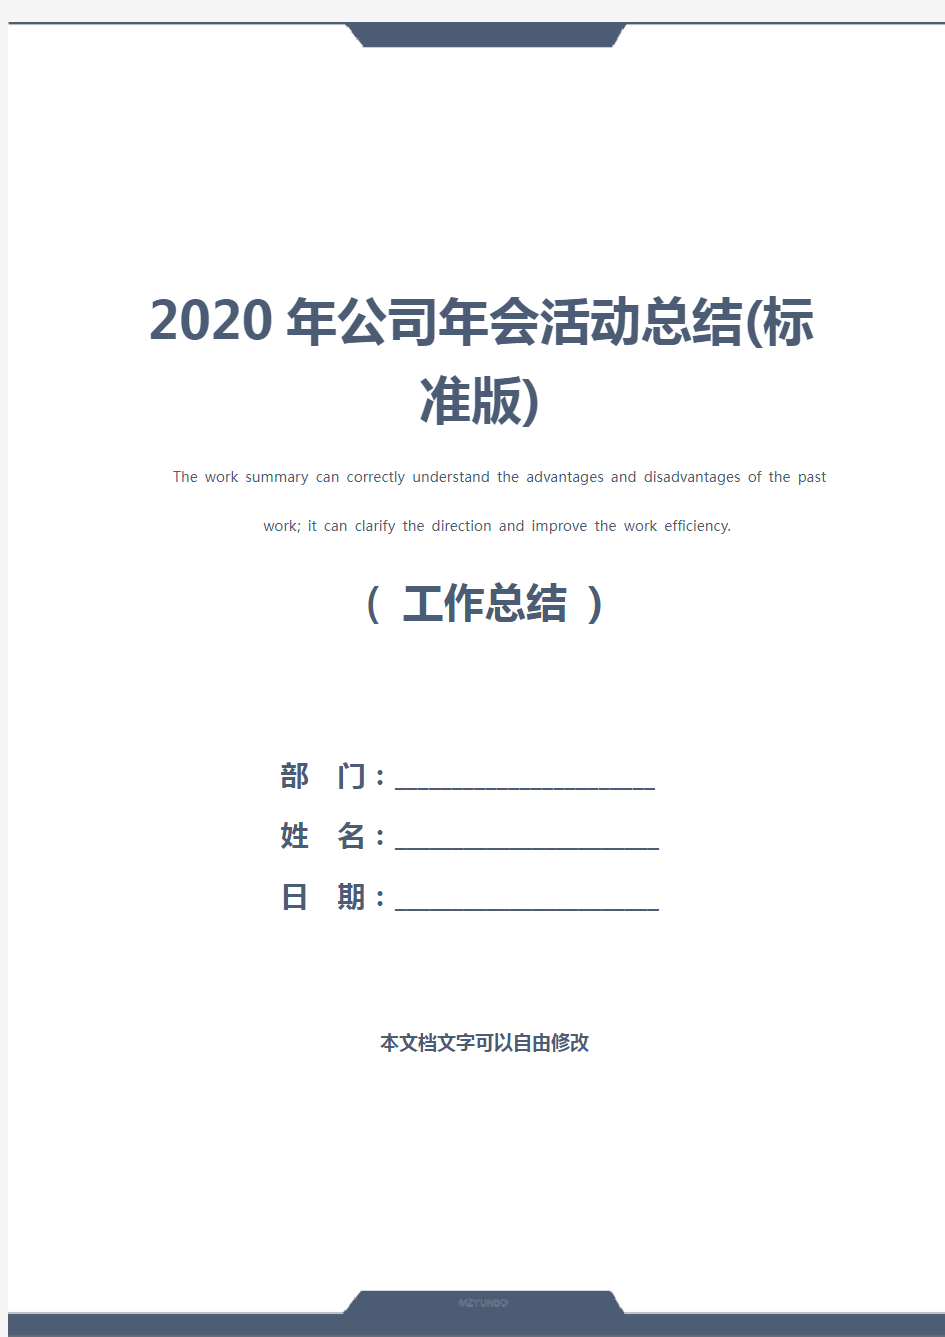 2020年公司年会活动总结(标准版)